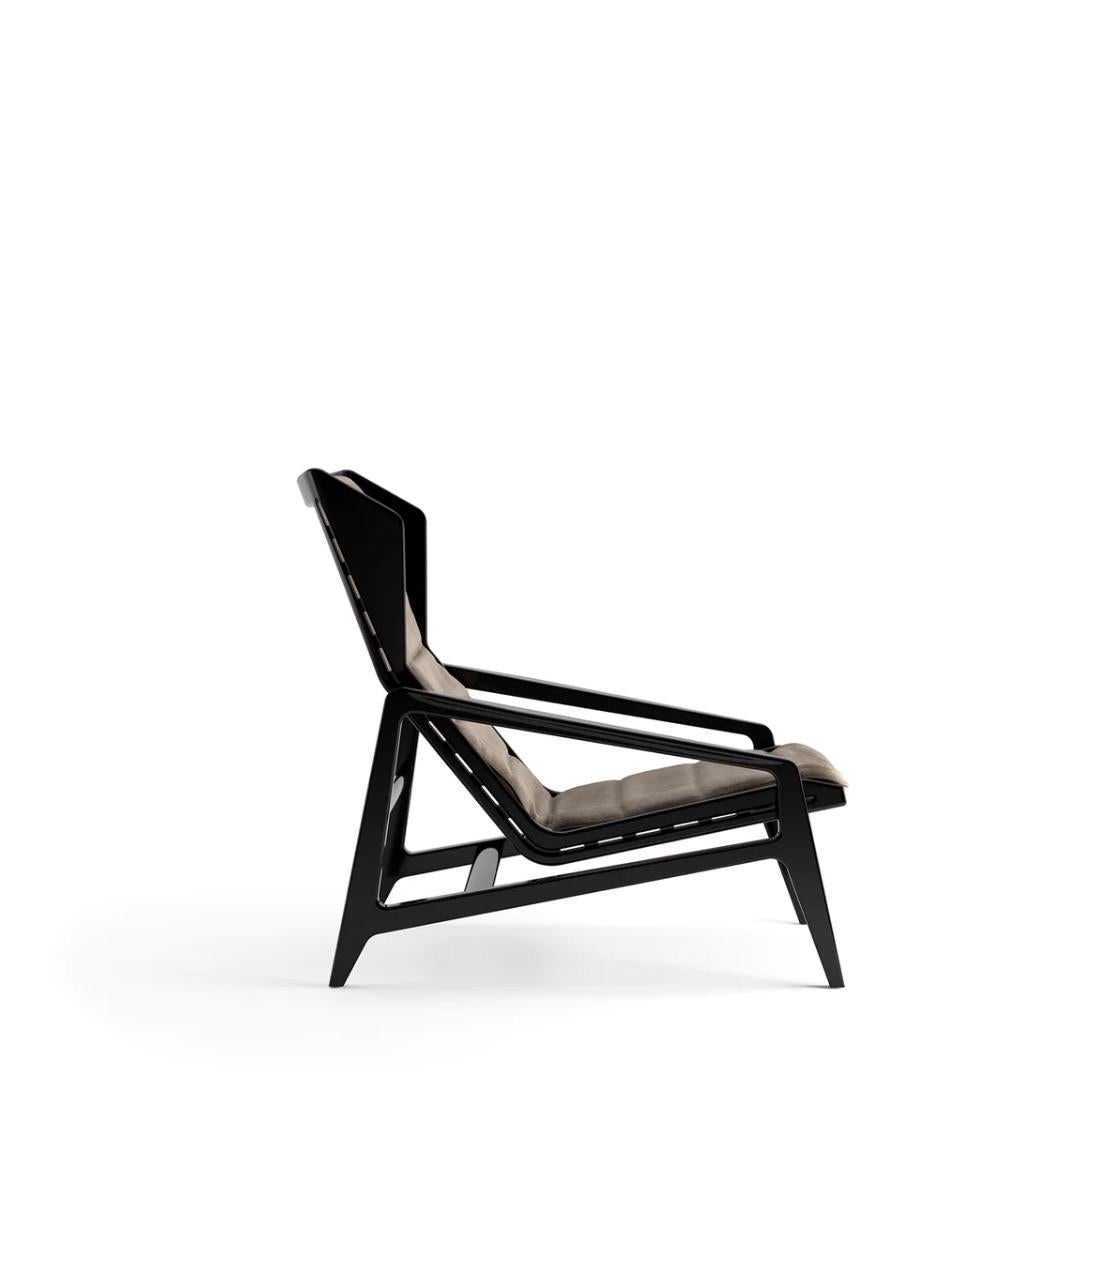 Le fauteuil D.156.3 de Gio Ponti a été choisi pour la 10e Triennale de Milan comme modèle exemplaire de design mobilier. Défini par des formes géométriques, ce fauteuil est fabriqué à la main par des artisans qualifiés et présente un soutien